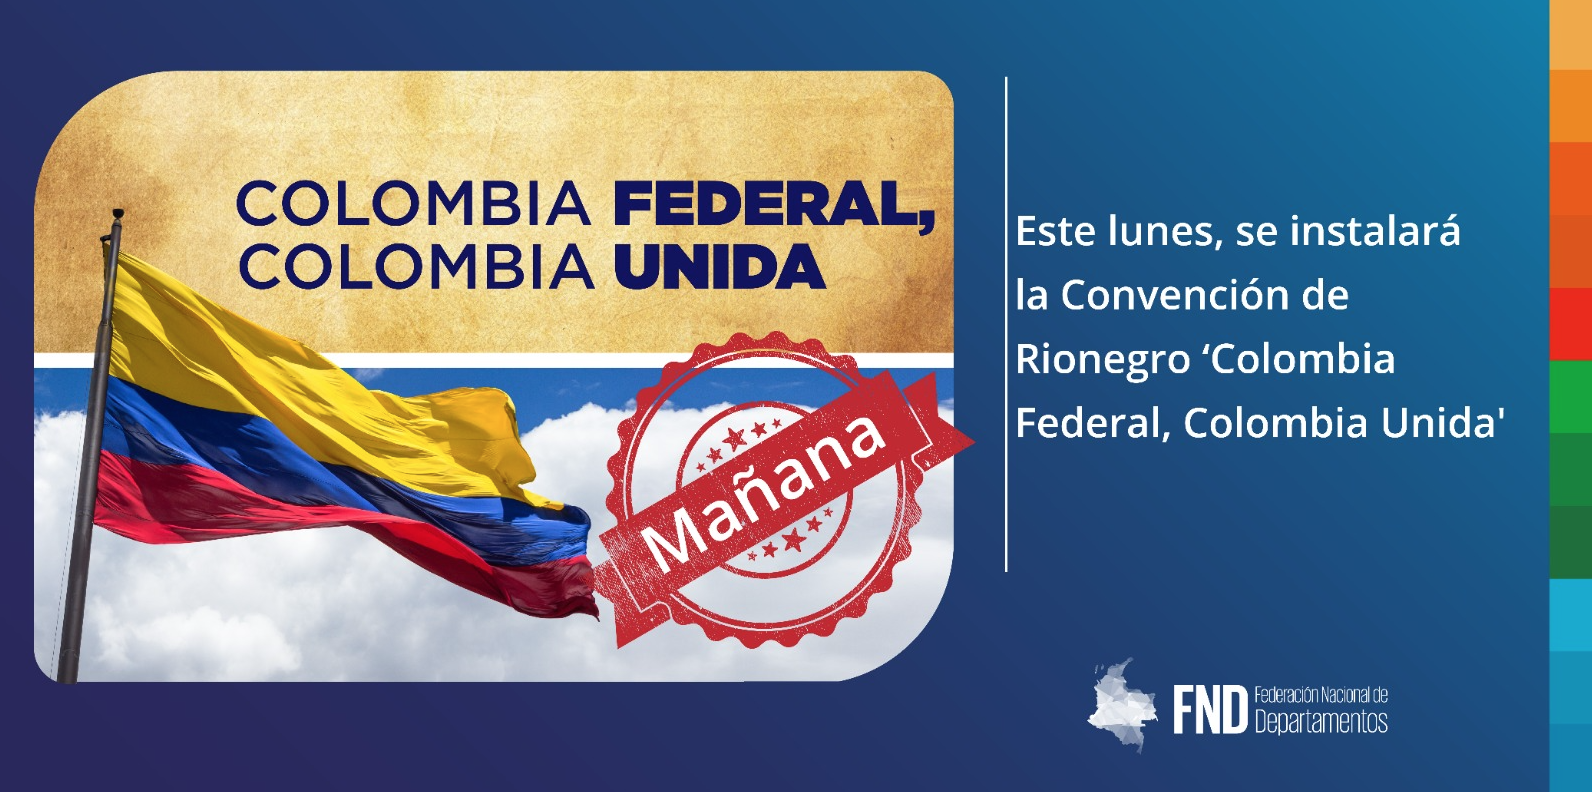 image Este lunes, se instalará la Convención de Rionegro ‘Colombia Federal, Colombia Unida’